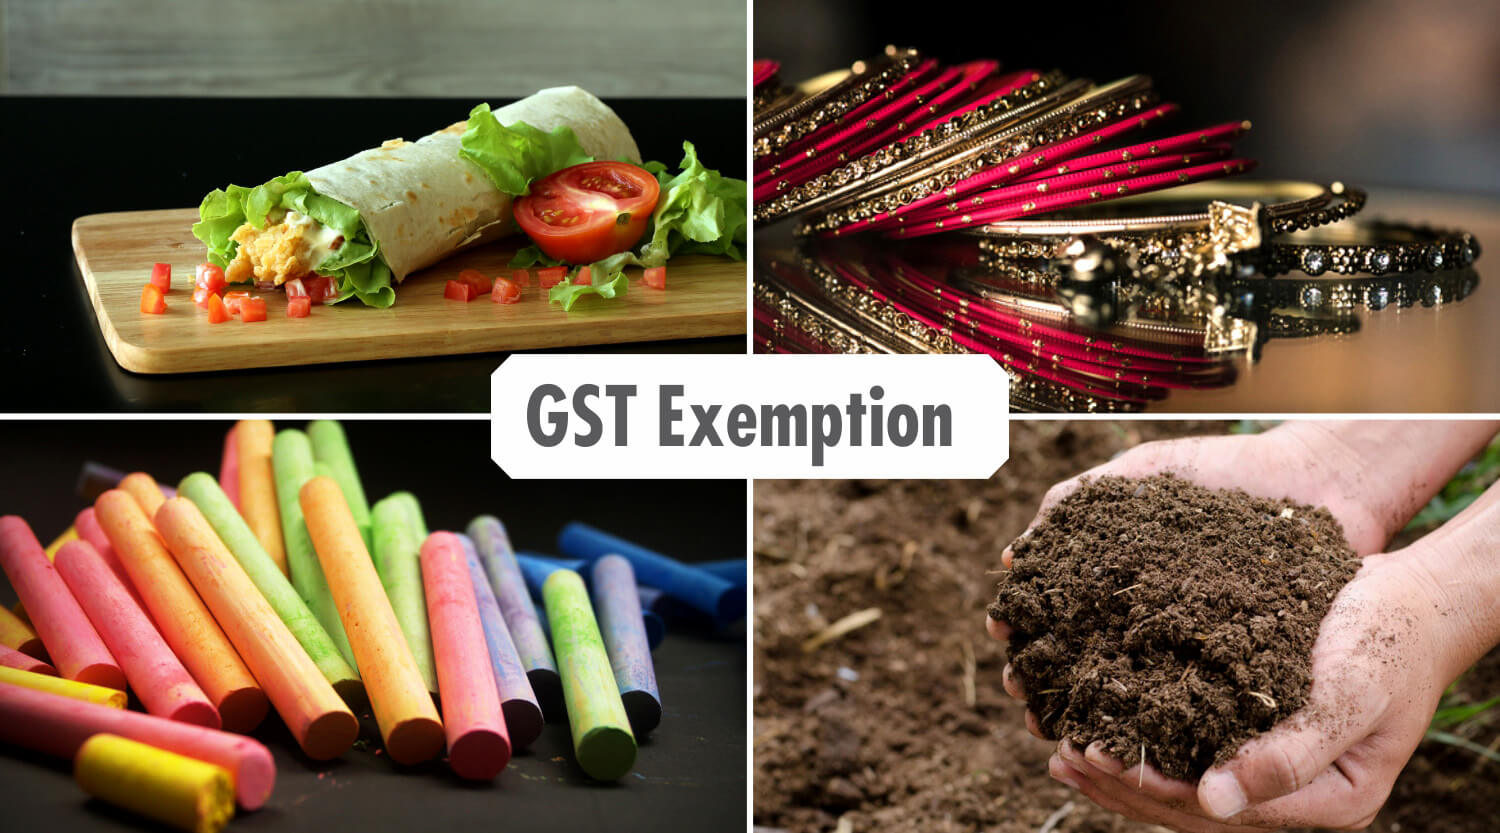 gst-exemption-2019-gst-exemption-limit